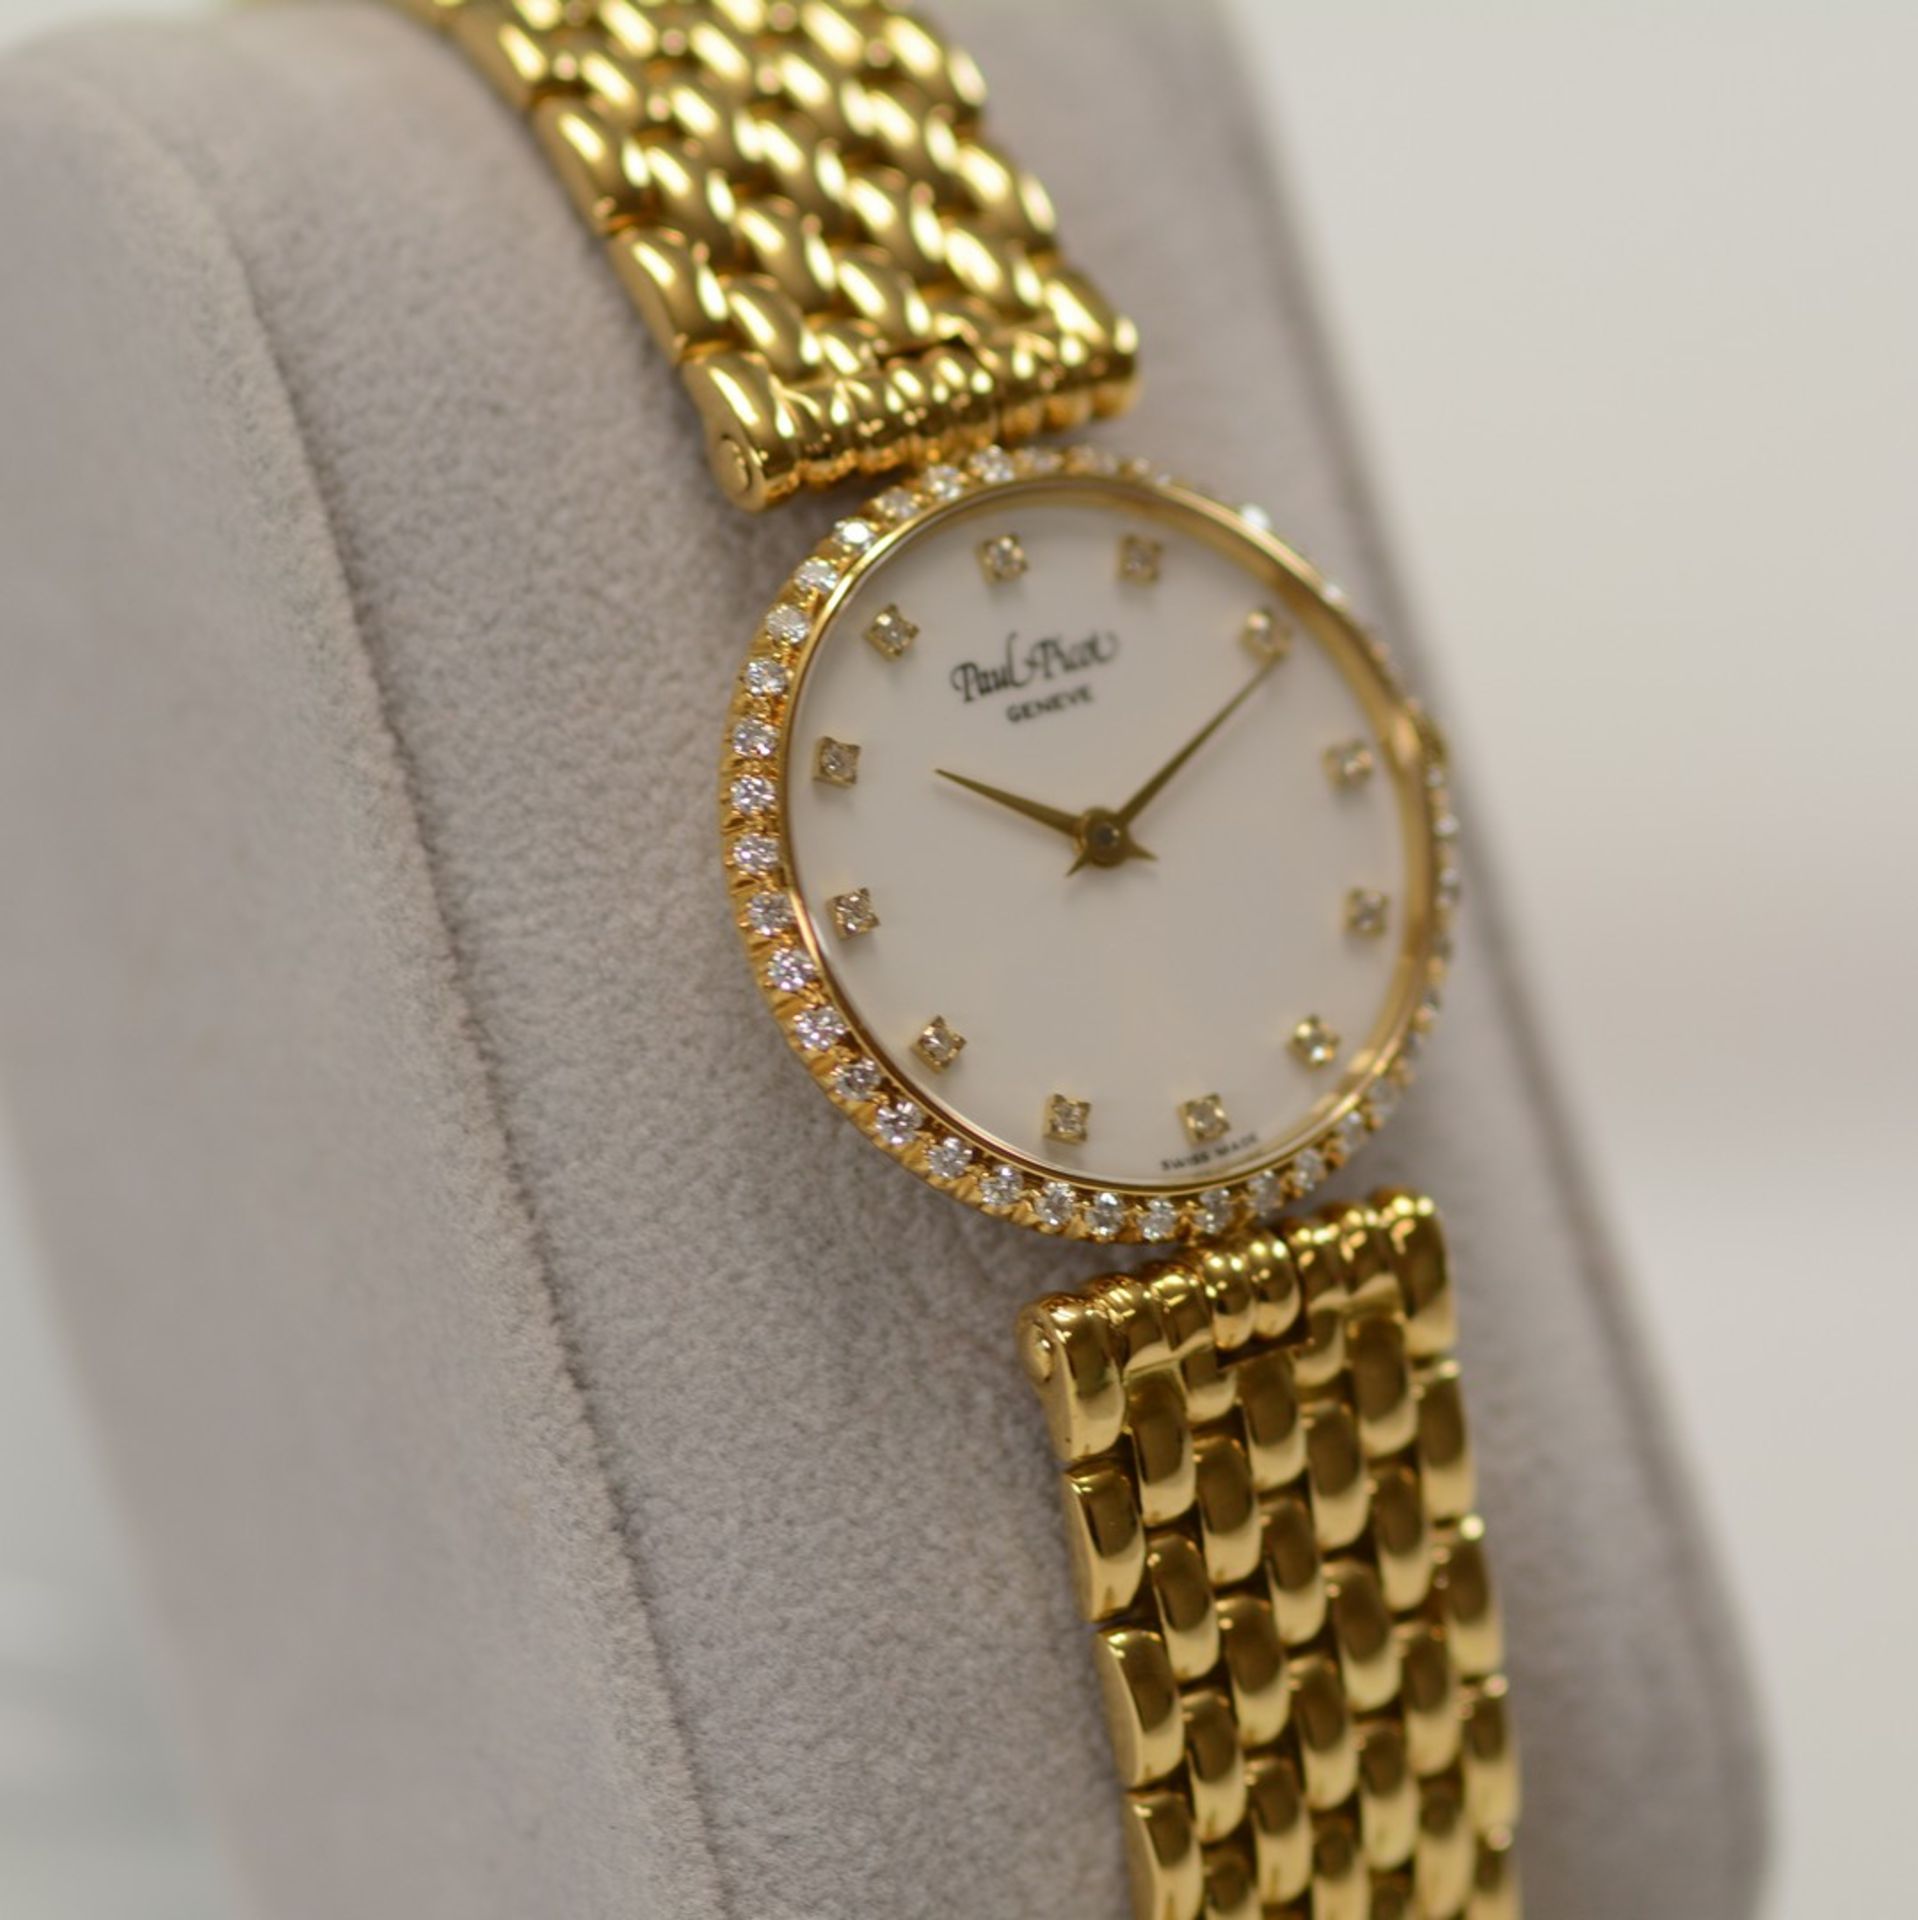 Paul Picot / Diamond - Lady's Yellow gold Wrist Watch - Image 4 of 11